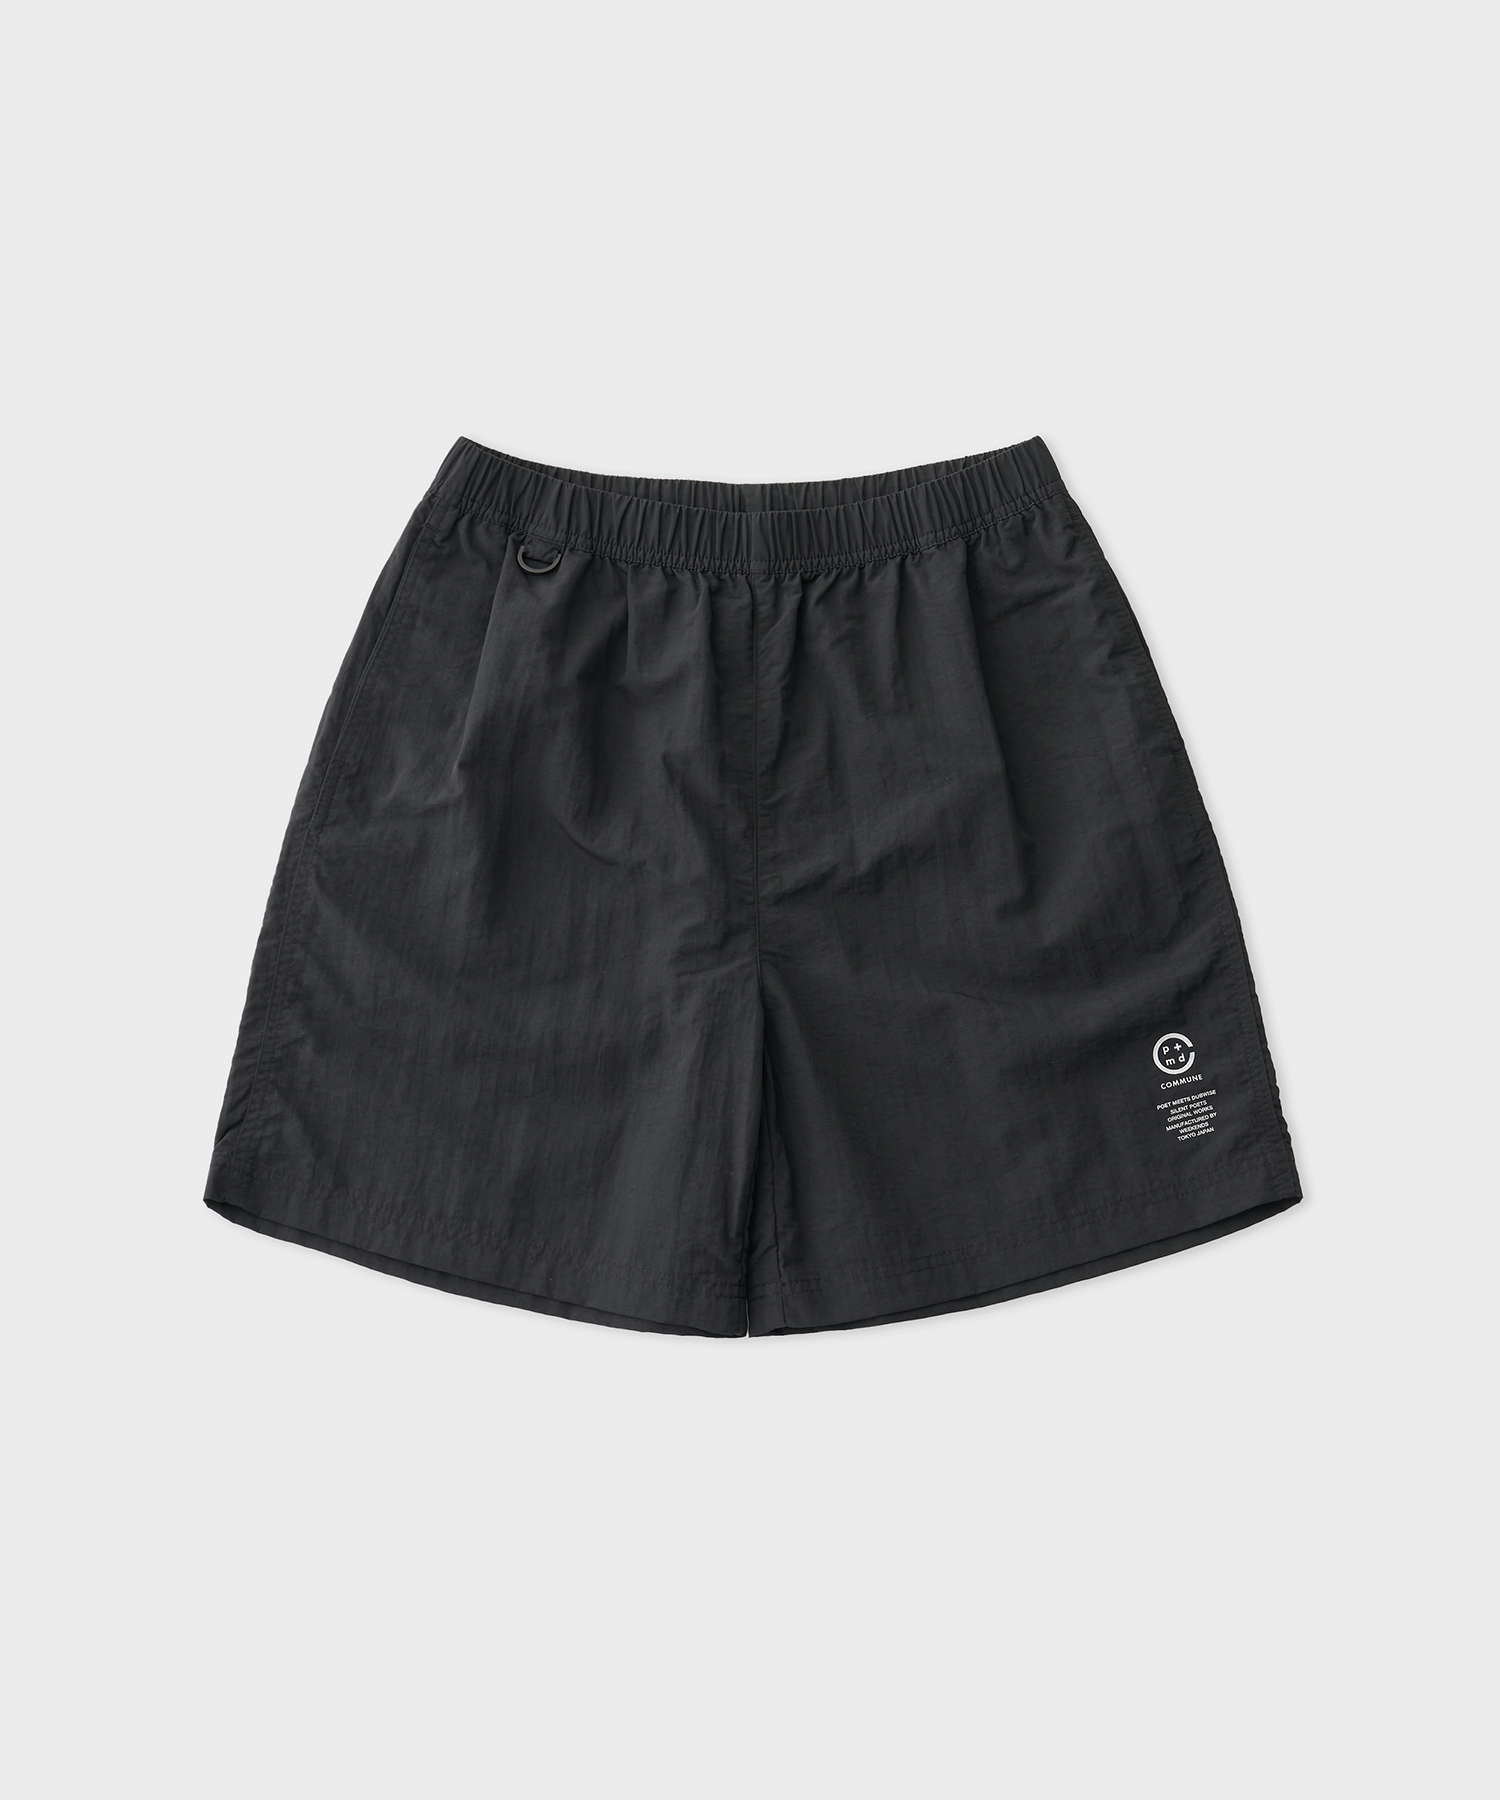 Commune Nylon Shorts (Black)